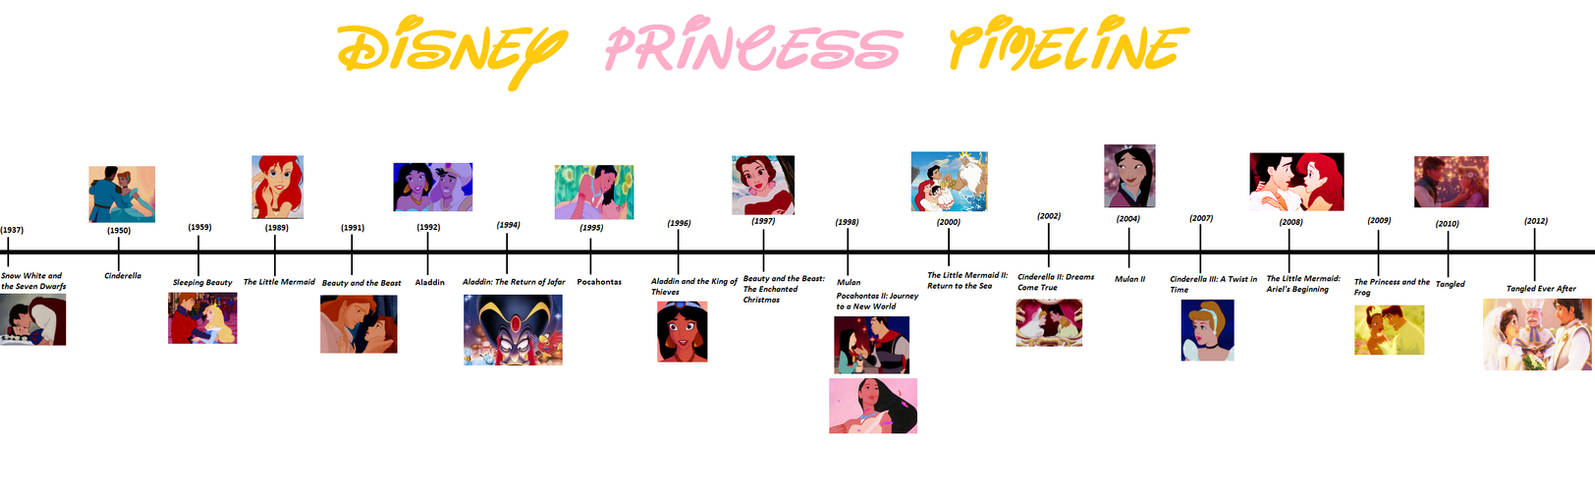 Image result for disney princess timeline